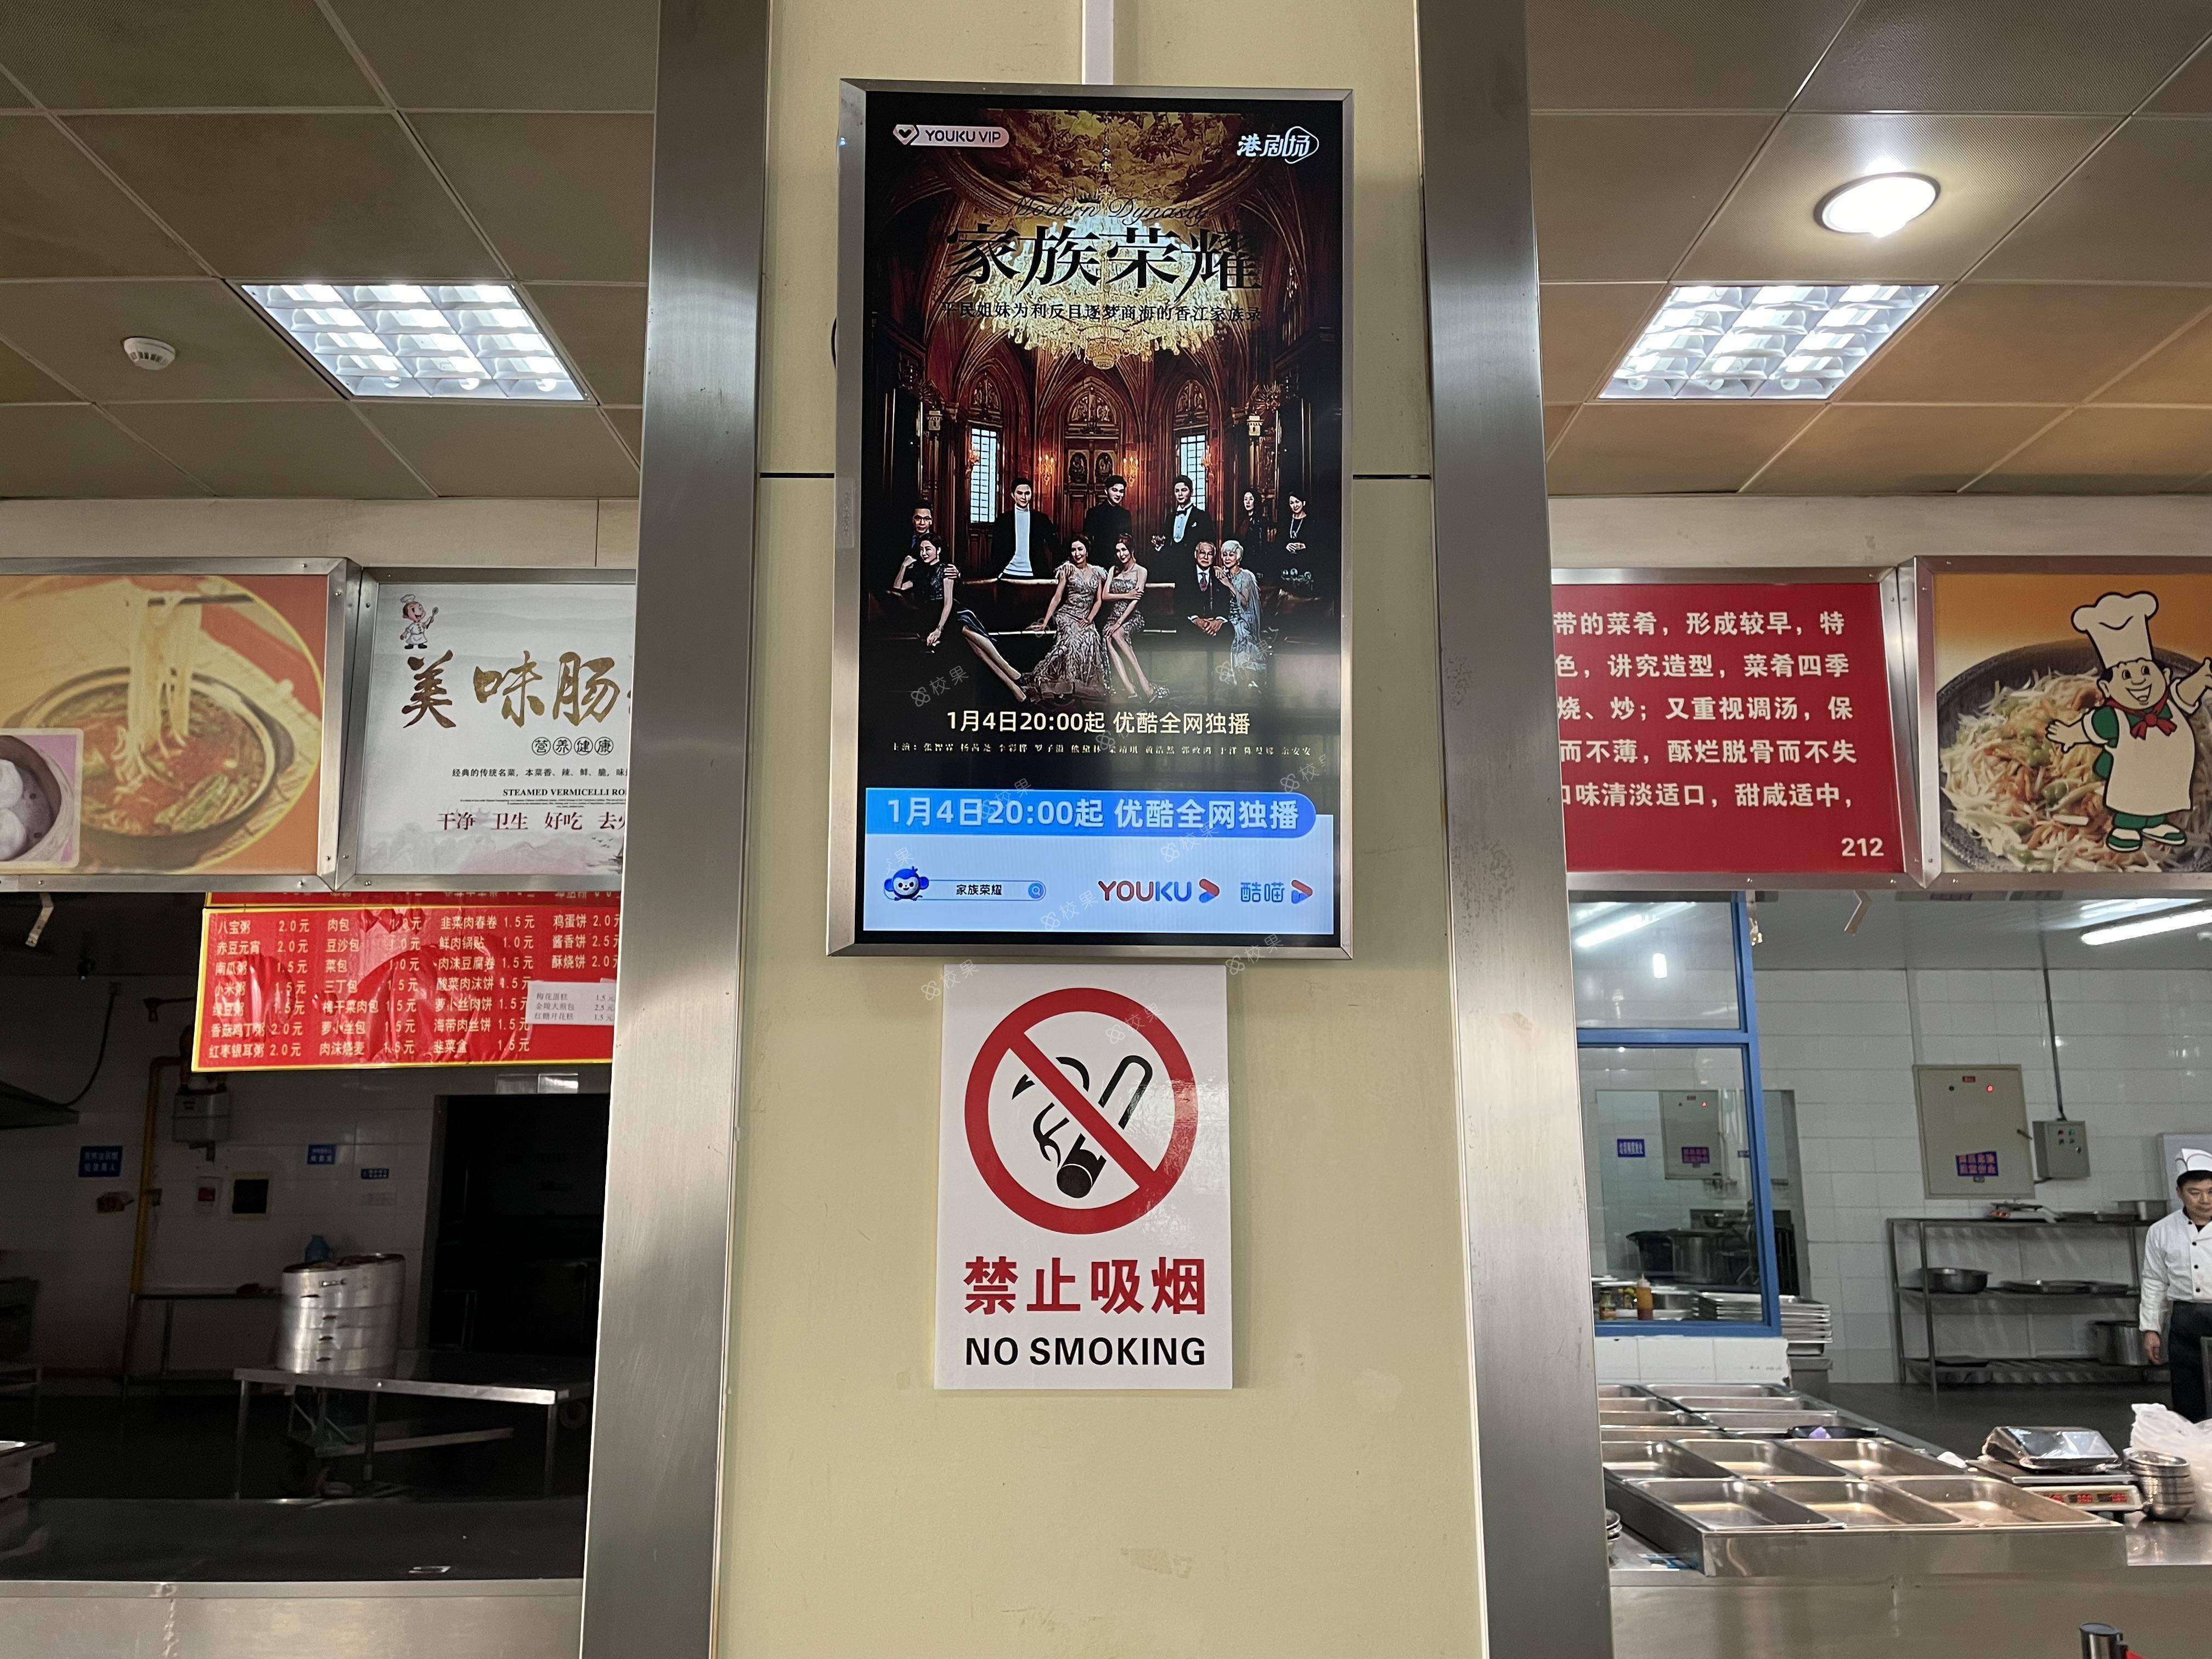 液晶屏广告 北京外国语大学-东校区